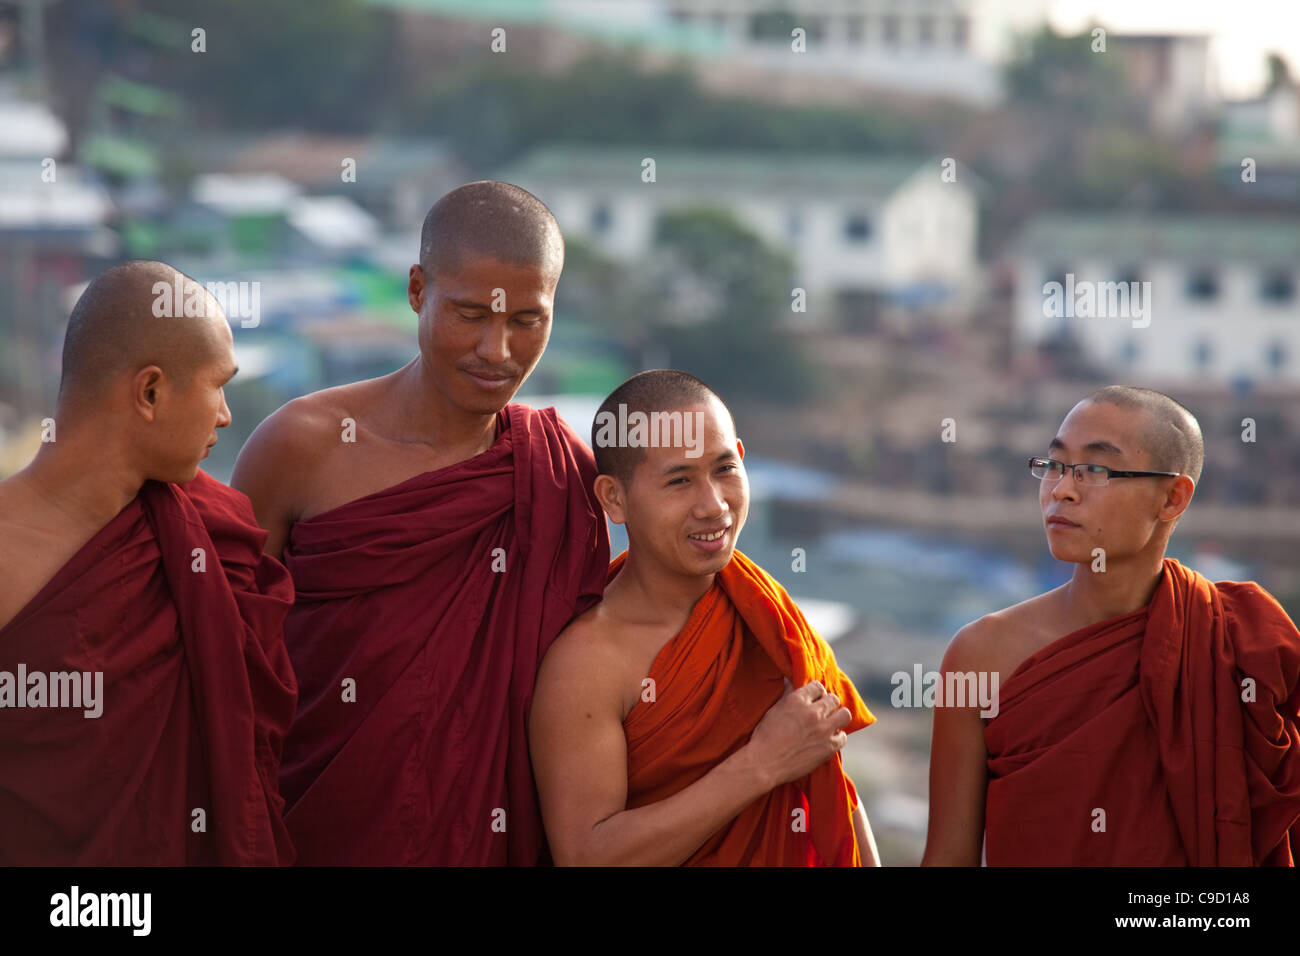 GOLDEN ROCK, MYANMAR - Jan 28: i monaci buddisti al Golden Rock on gennaio 28, 2011 in Kyaiktiyo, Myanmar. Foto Stock